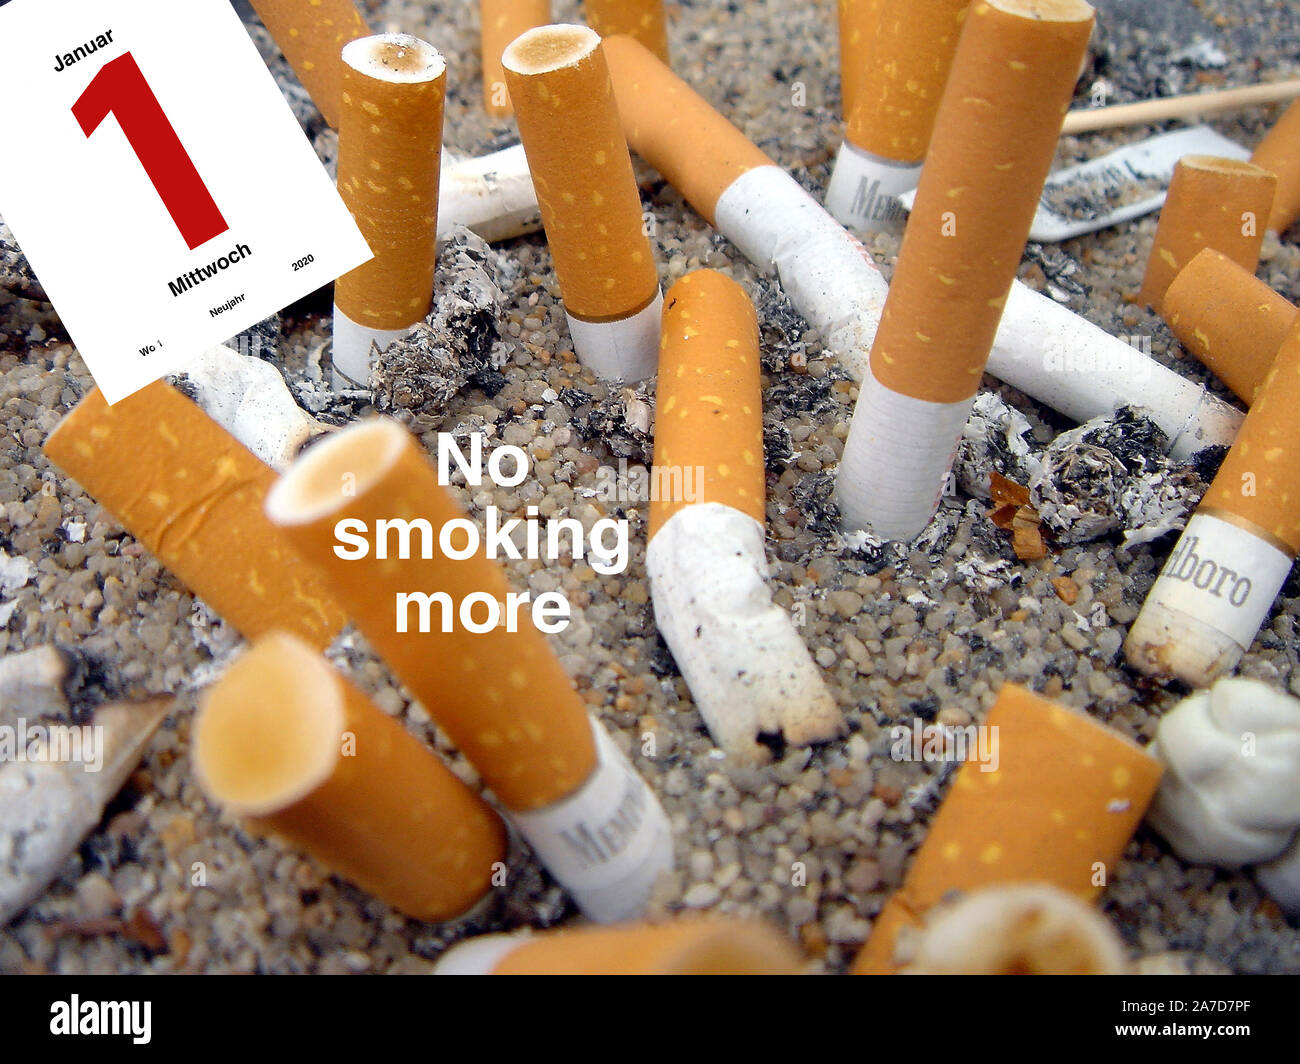 Zigarettenstummel, Aschenbecher, Zigaretten, Raucher, Asche, Vorsätze für 2020, mit dem Rauchen aufhören, Stock Photo